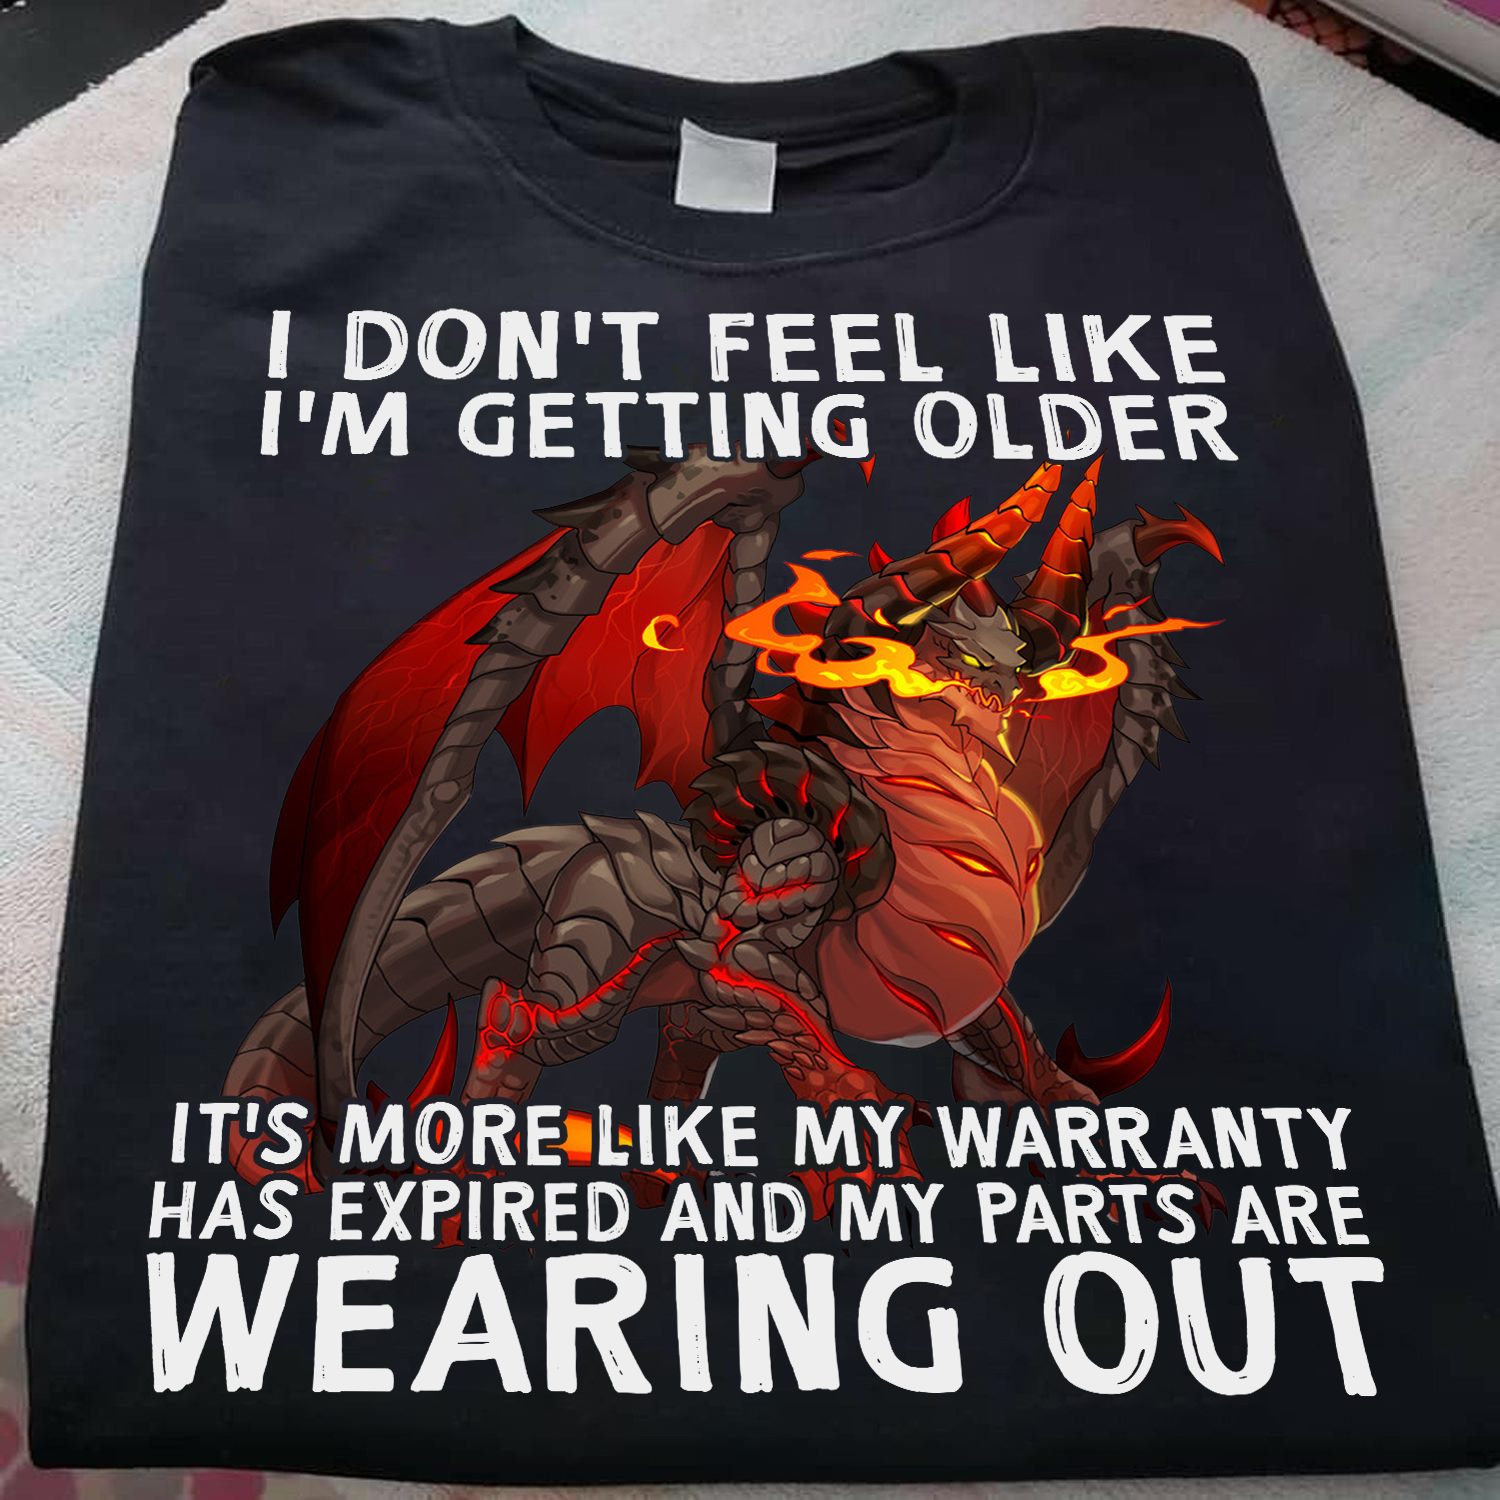 I don't feel like I'm getting older - Flame dragon